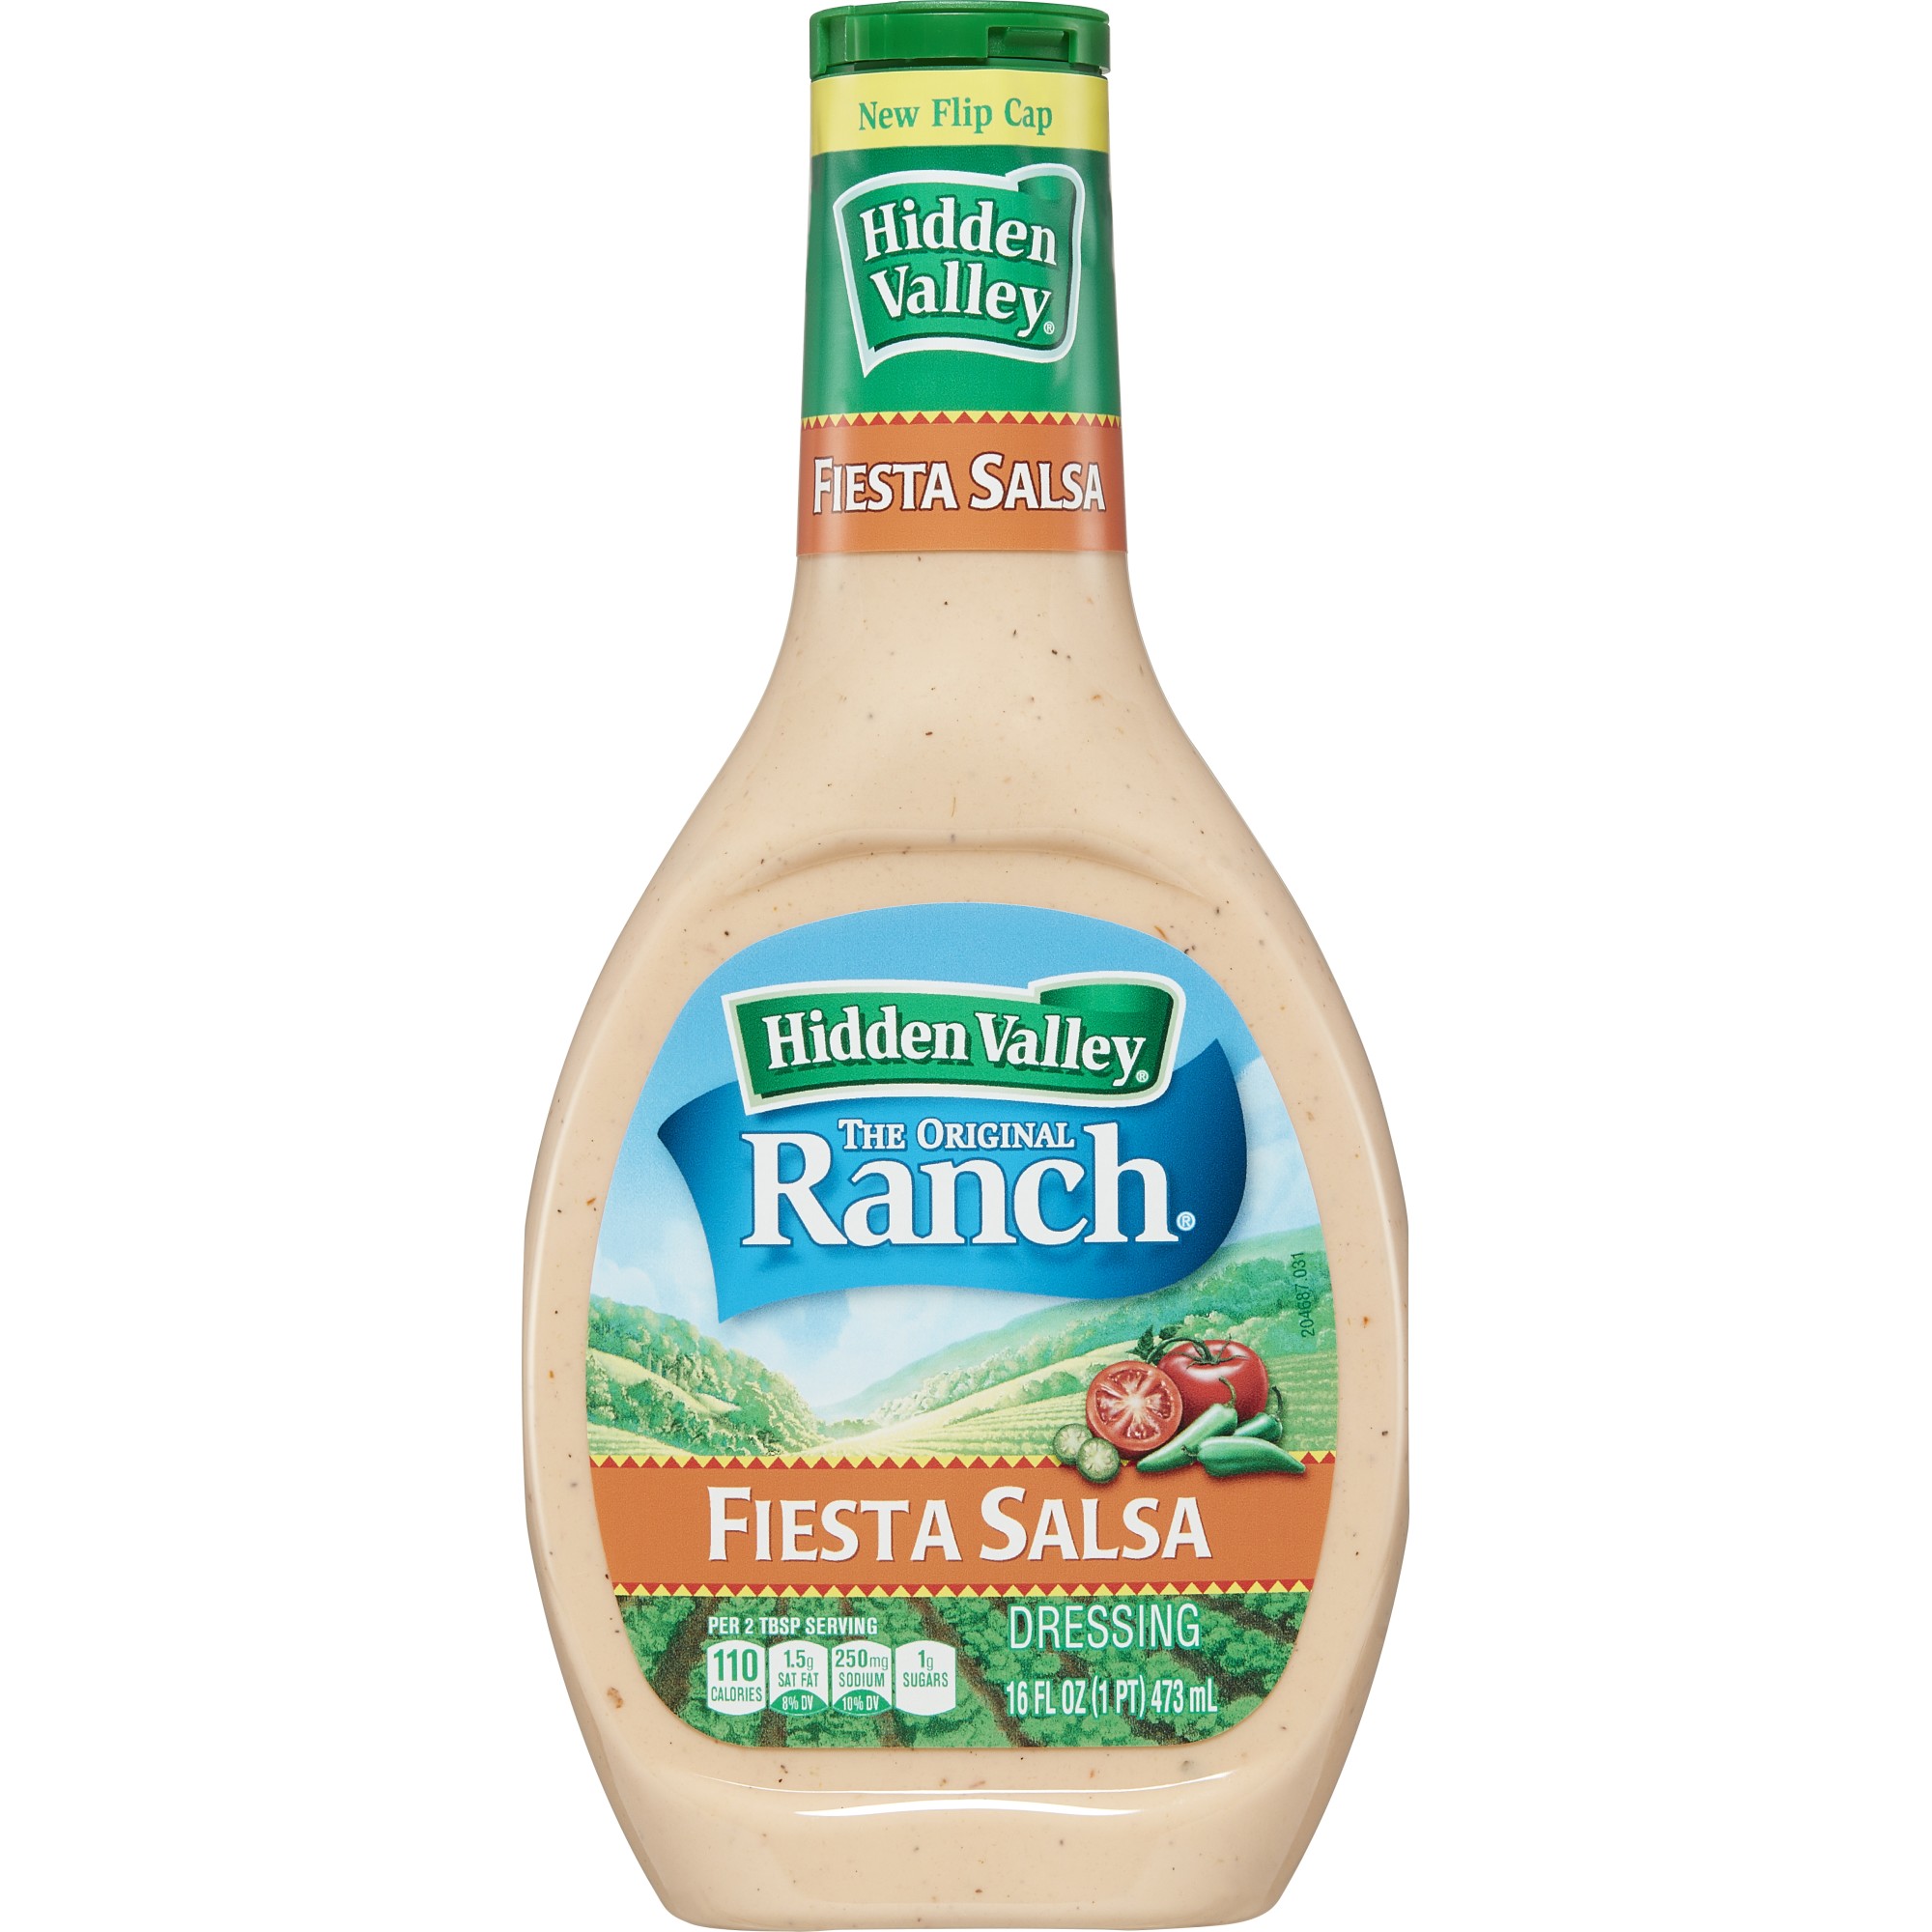 Hidden Valley Fiesta Salsa Ranch Salad Dressing & Topping, Gluten Free - 16 Ounce Bottle - image 2 of 10